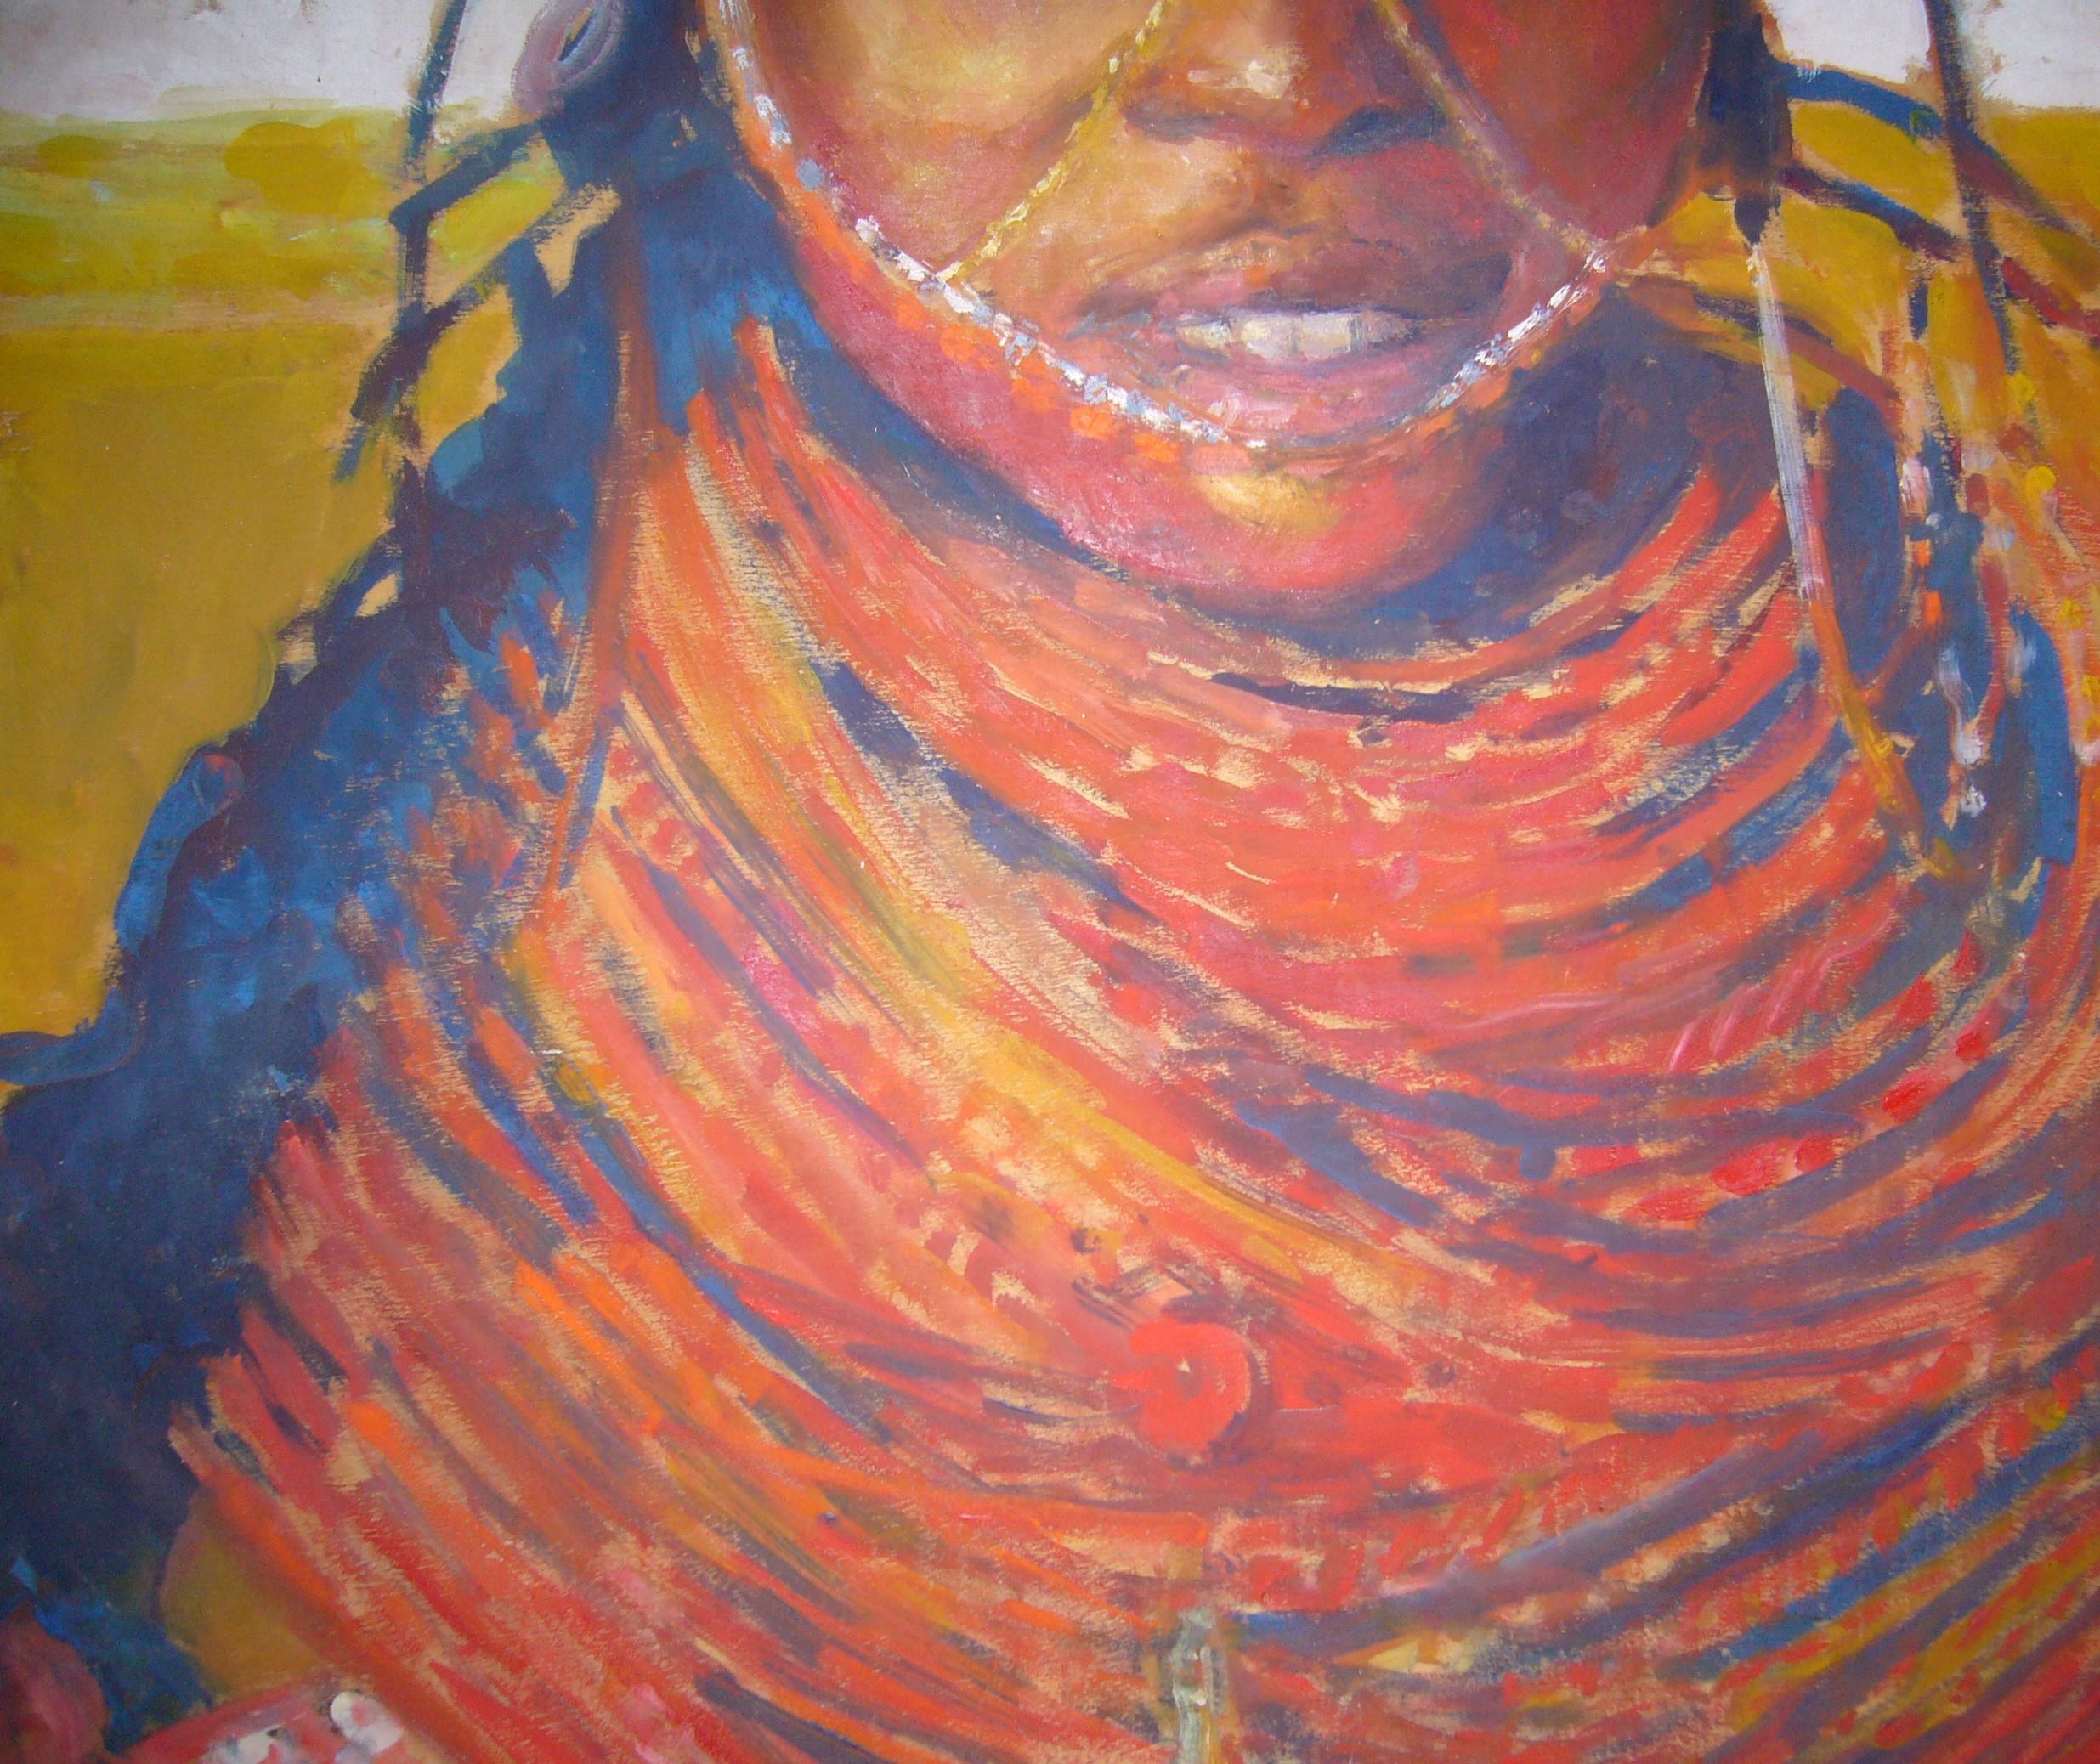 Porträt eines Massai, Öl auf Tafel. Mit Rahmen: 124cm x 91cm.

Patrice Landauer ist ein französischer Künstler, der 1965 geboren wurde.

Patrice Landauer hat seinen Stil im Rahmen einer sehr langen künstlerischen Ausbildung entwickelt. Er wurde an